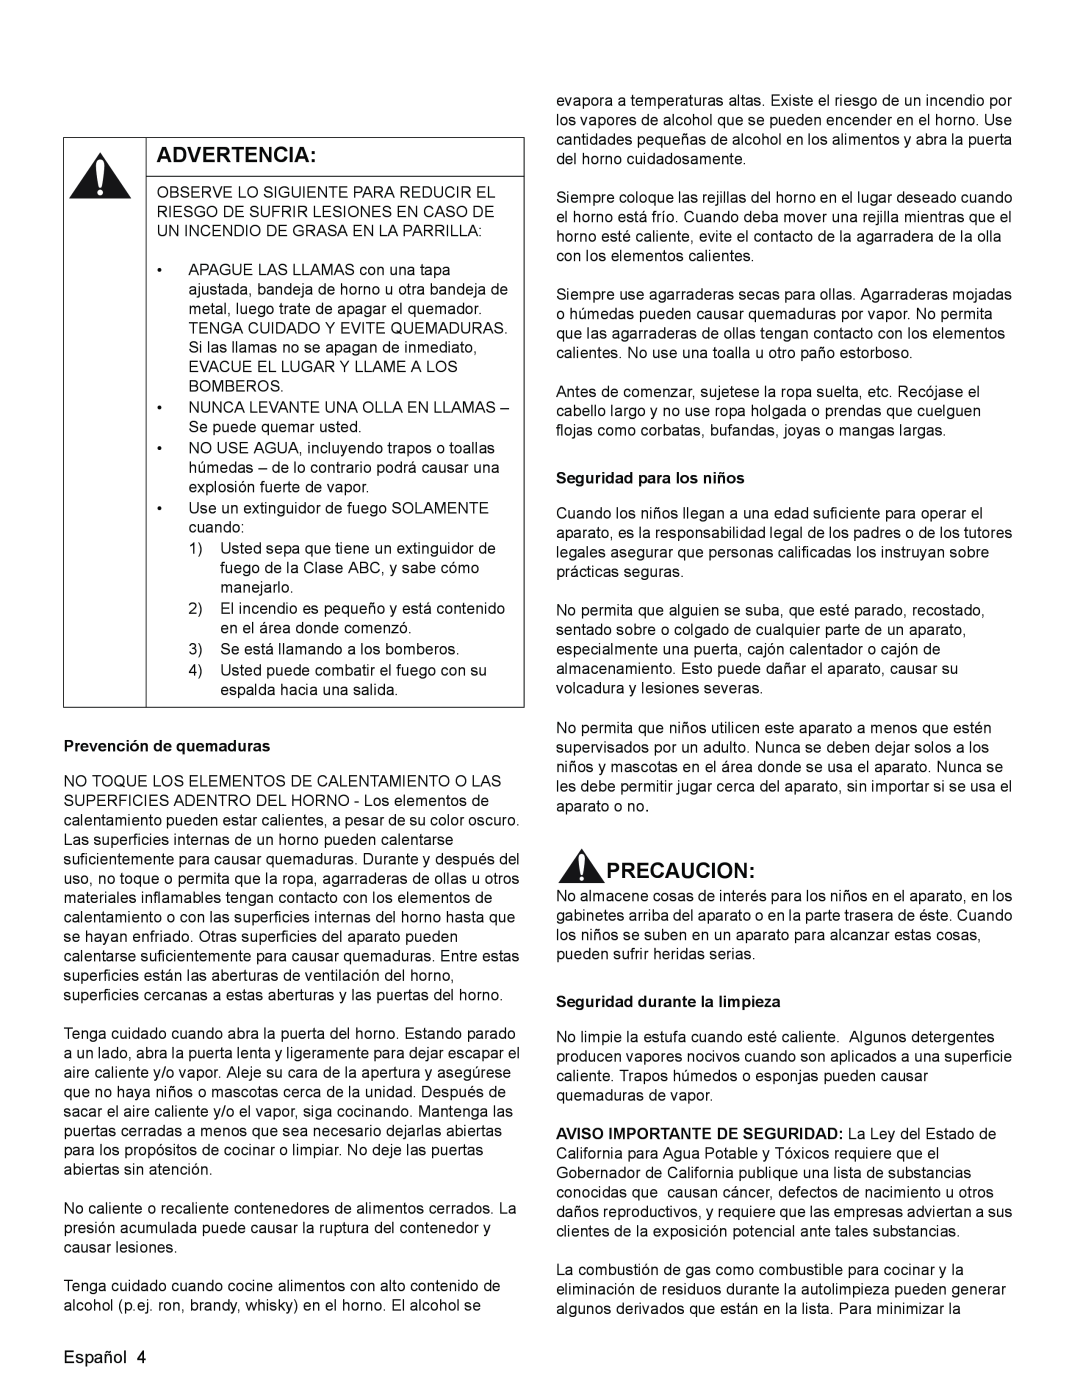 Bosch Appliances HGS3053UC manual Advertencia, Precaucion, Prevención de quemaduras, Seguridad para los niños 